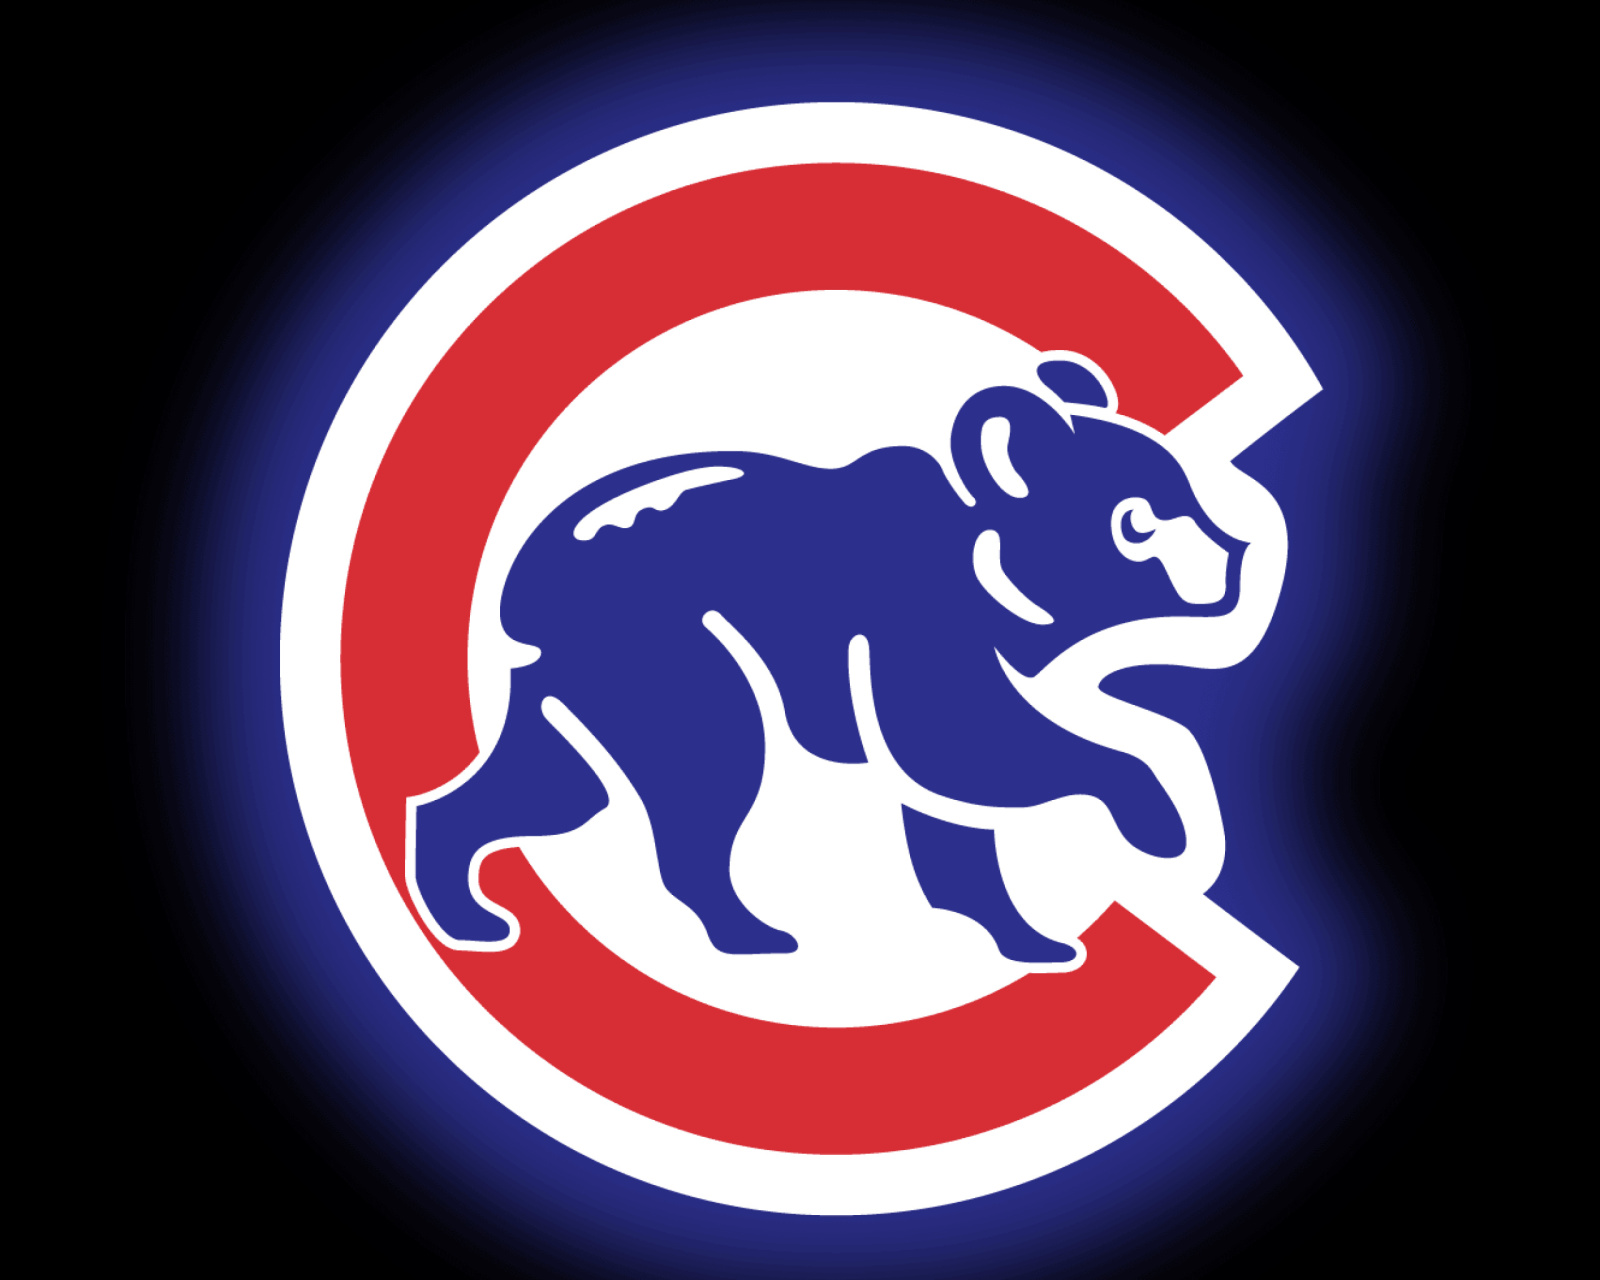 Chicago Cubs Baseball Team wallpaper 1600x1280